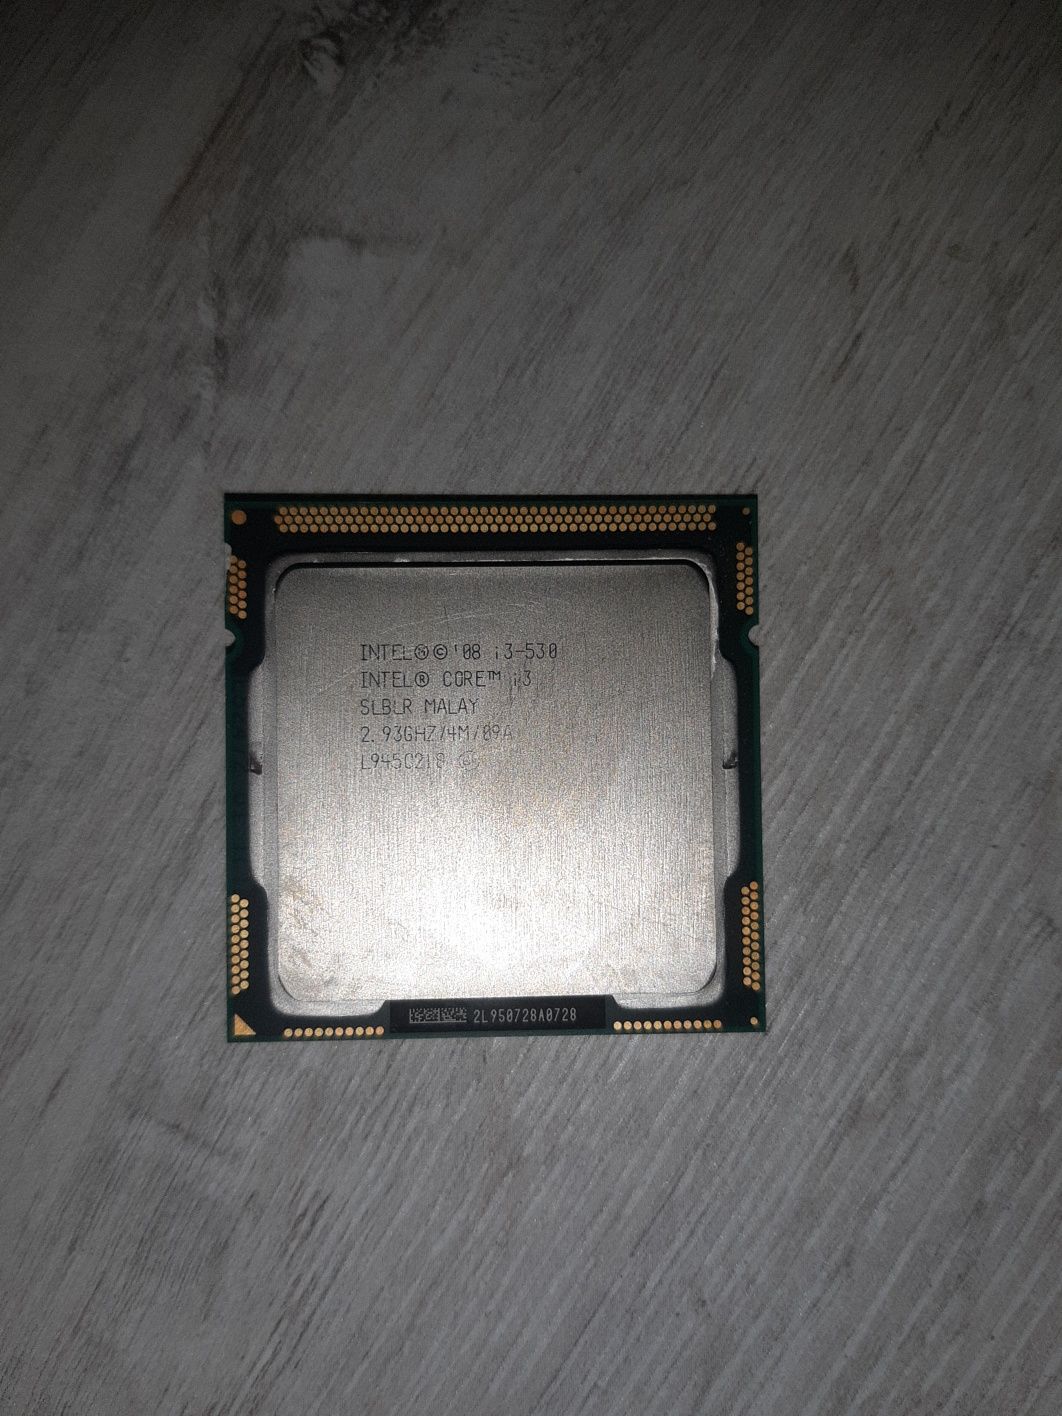 Процесор Intel Core i3-530
Socket 1156
Кількість ядер
2
Максимальна та